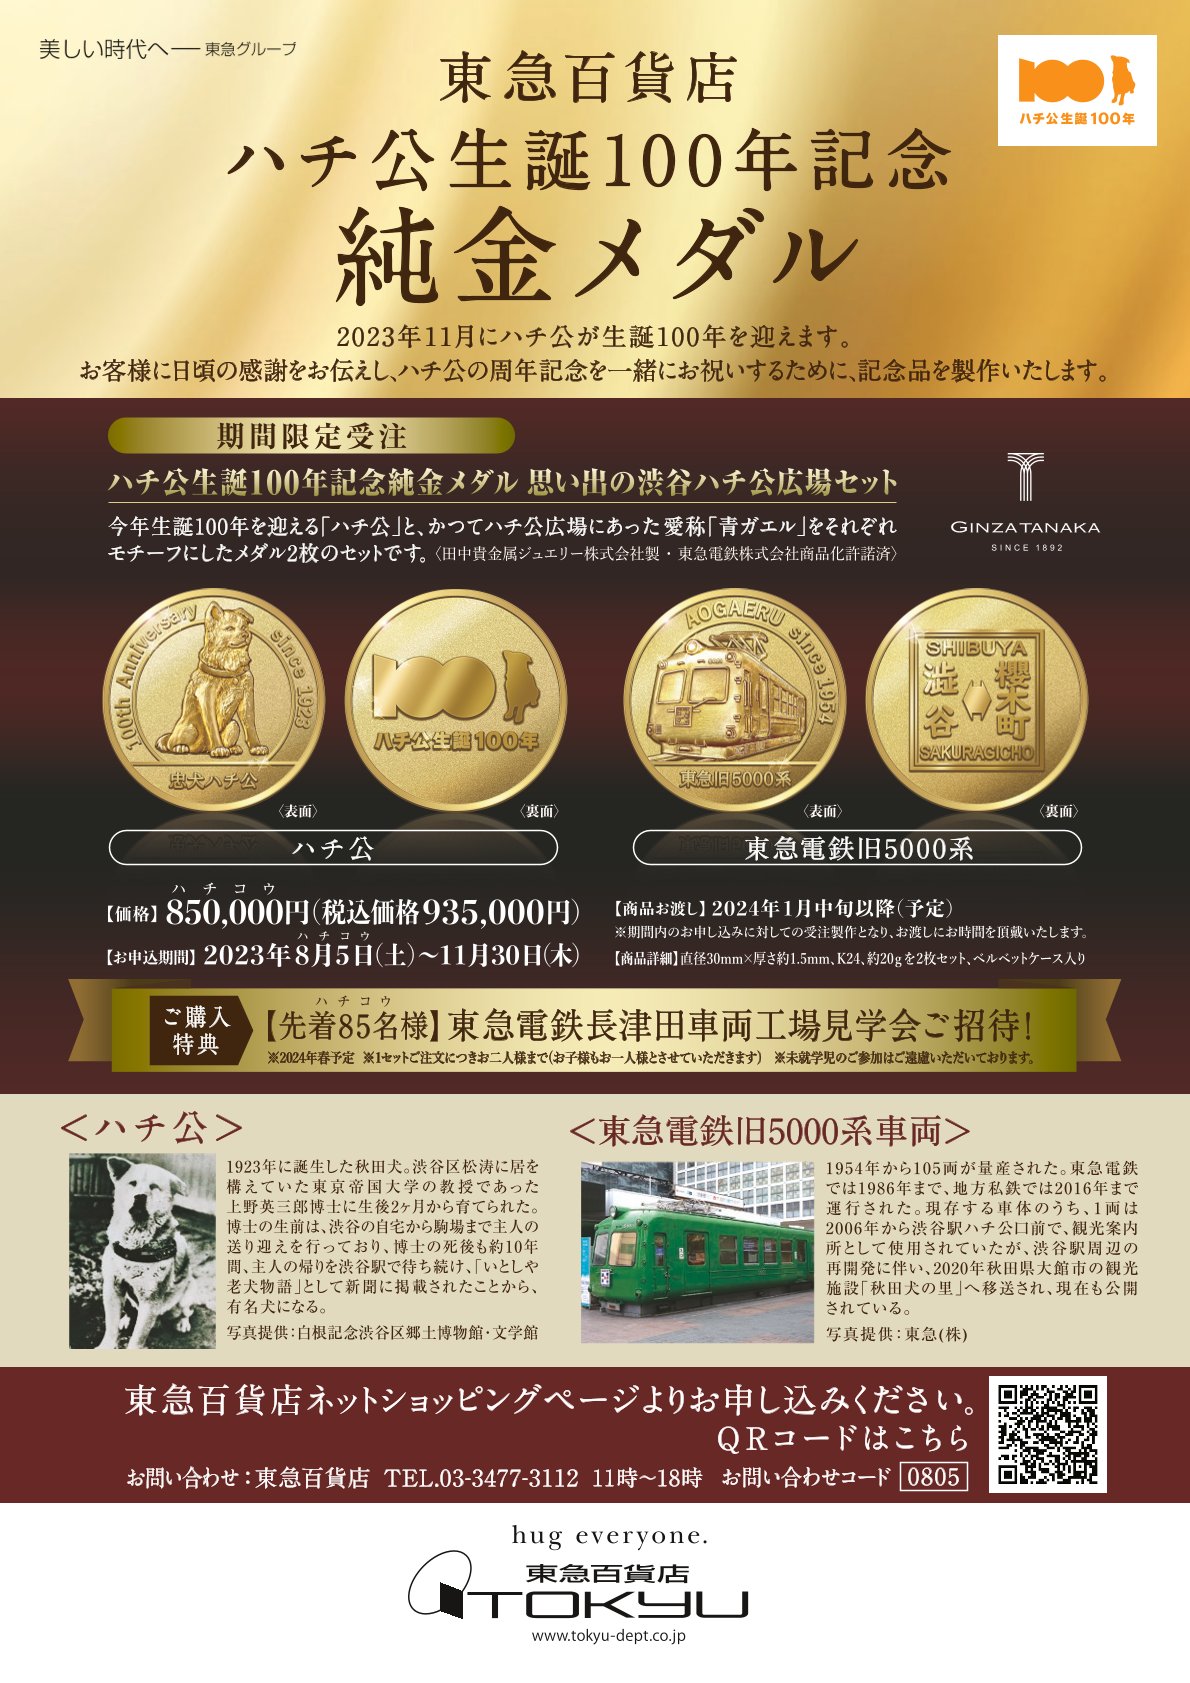 【お知らせ】ハチ公生誕100年記念純金メダルの販売について